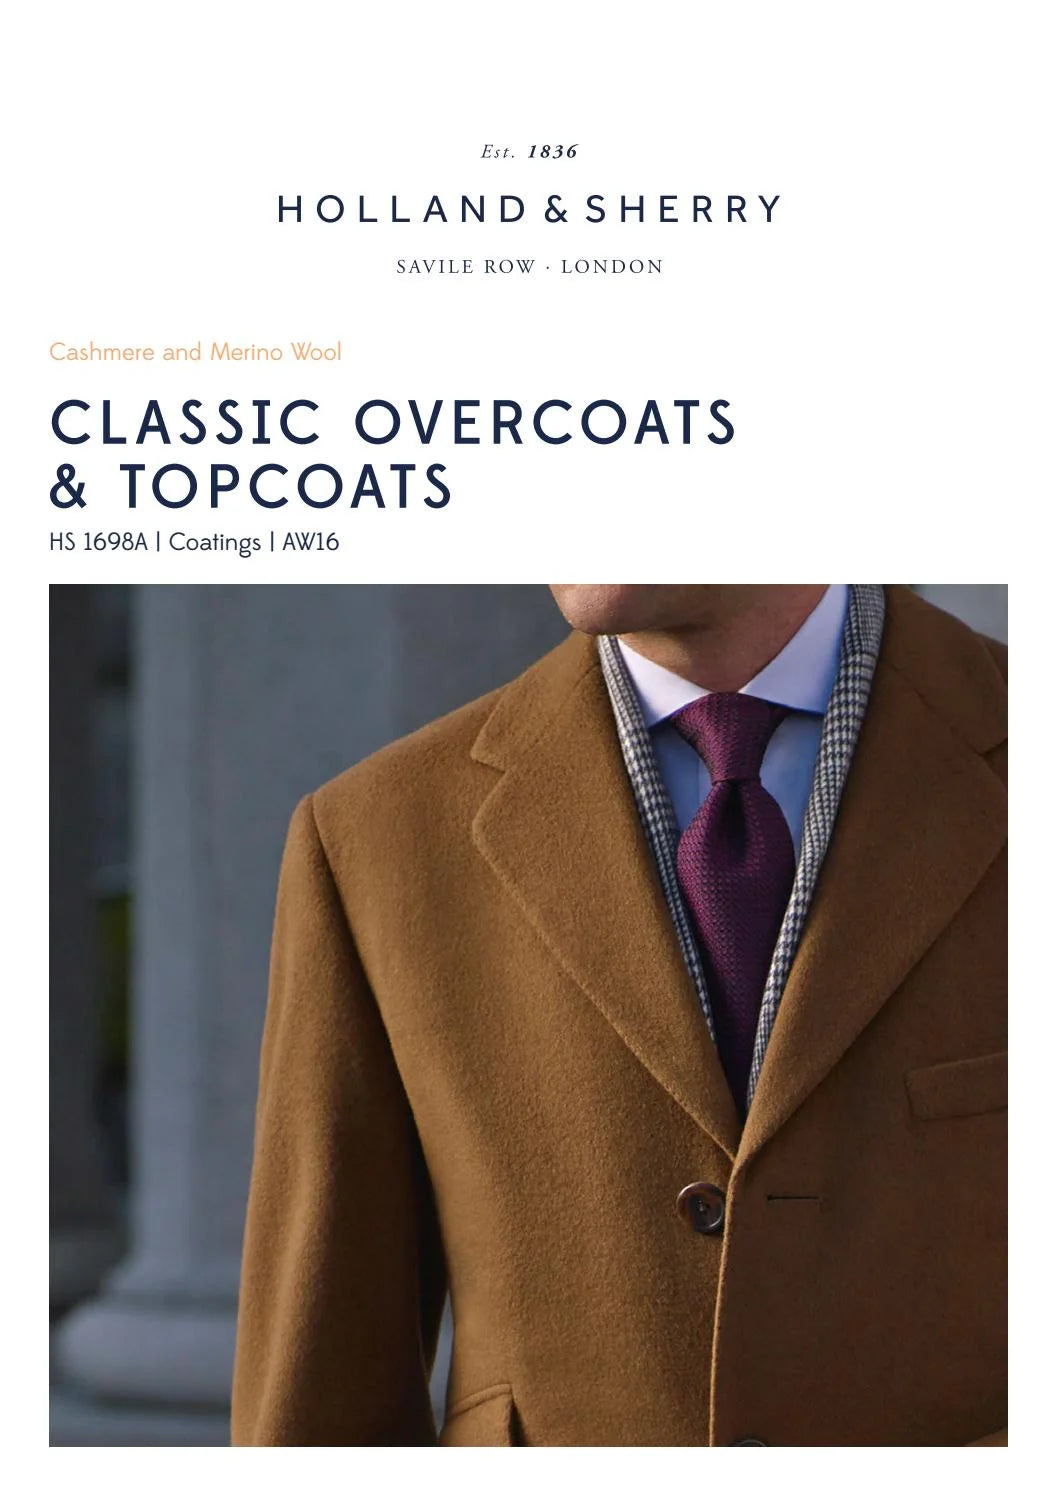 Pánský kabát šitý na zakázku (bespoke) z kolekce látek Holland & Sherry